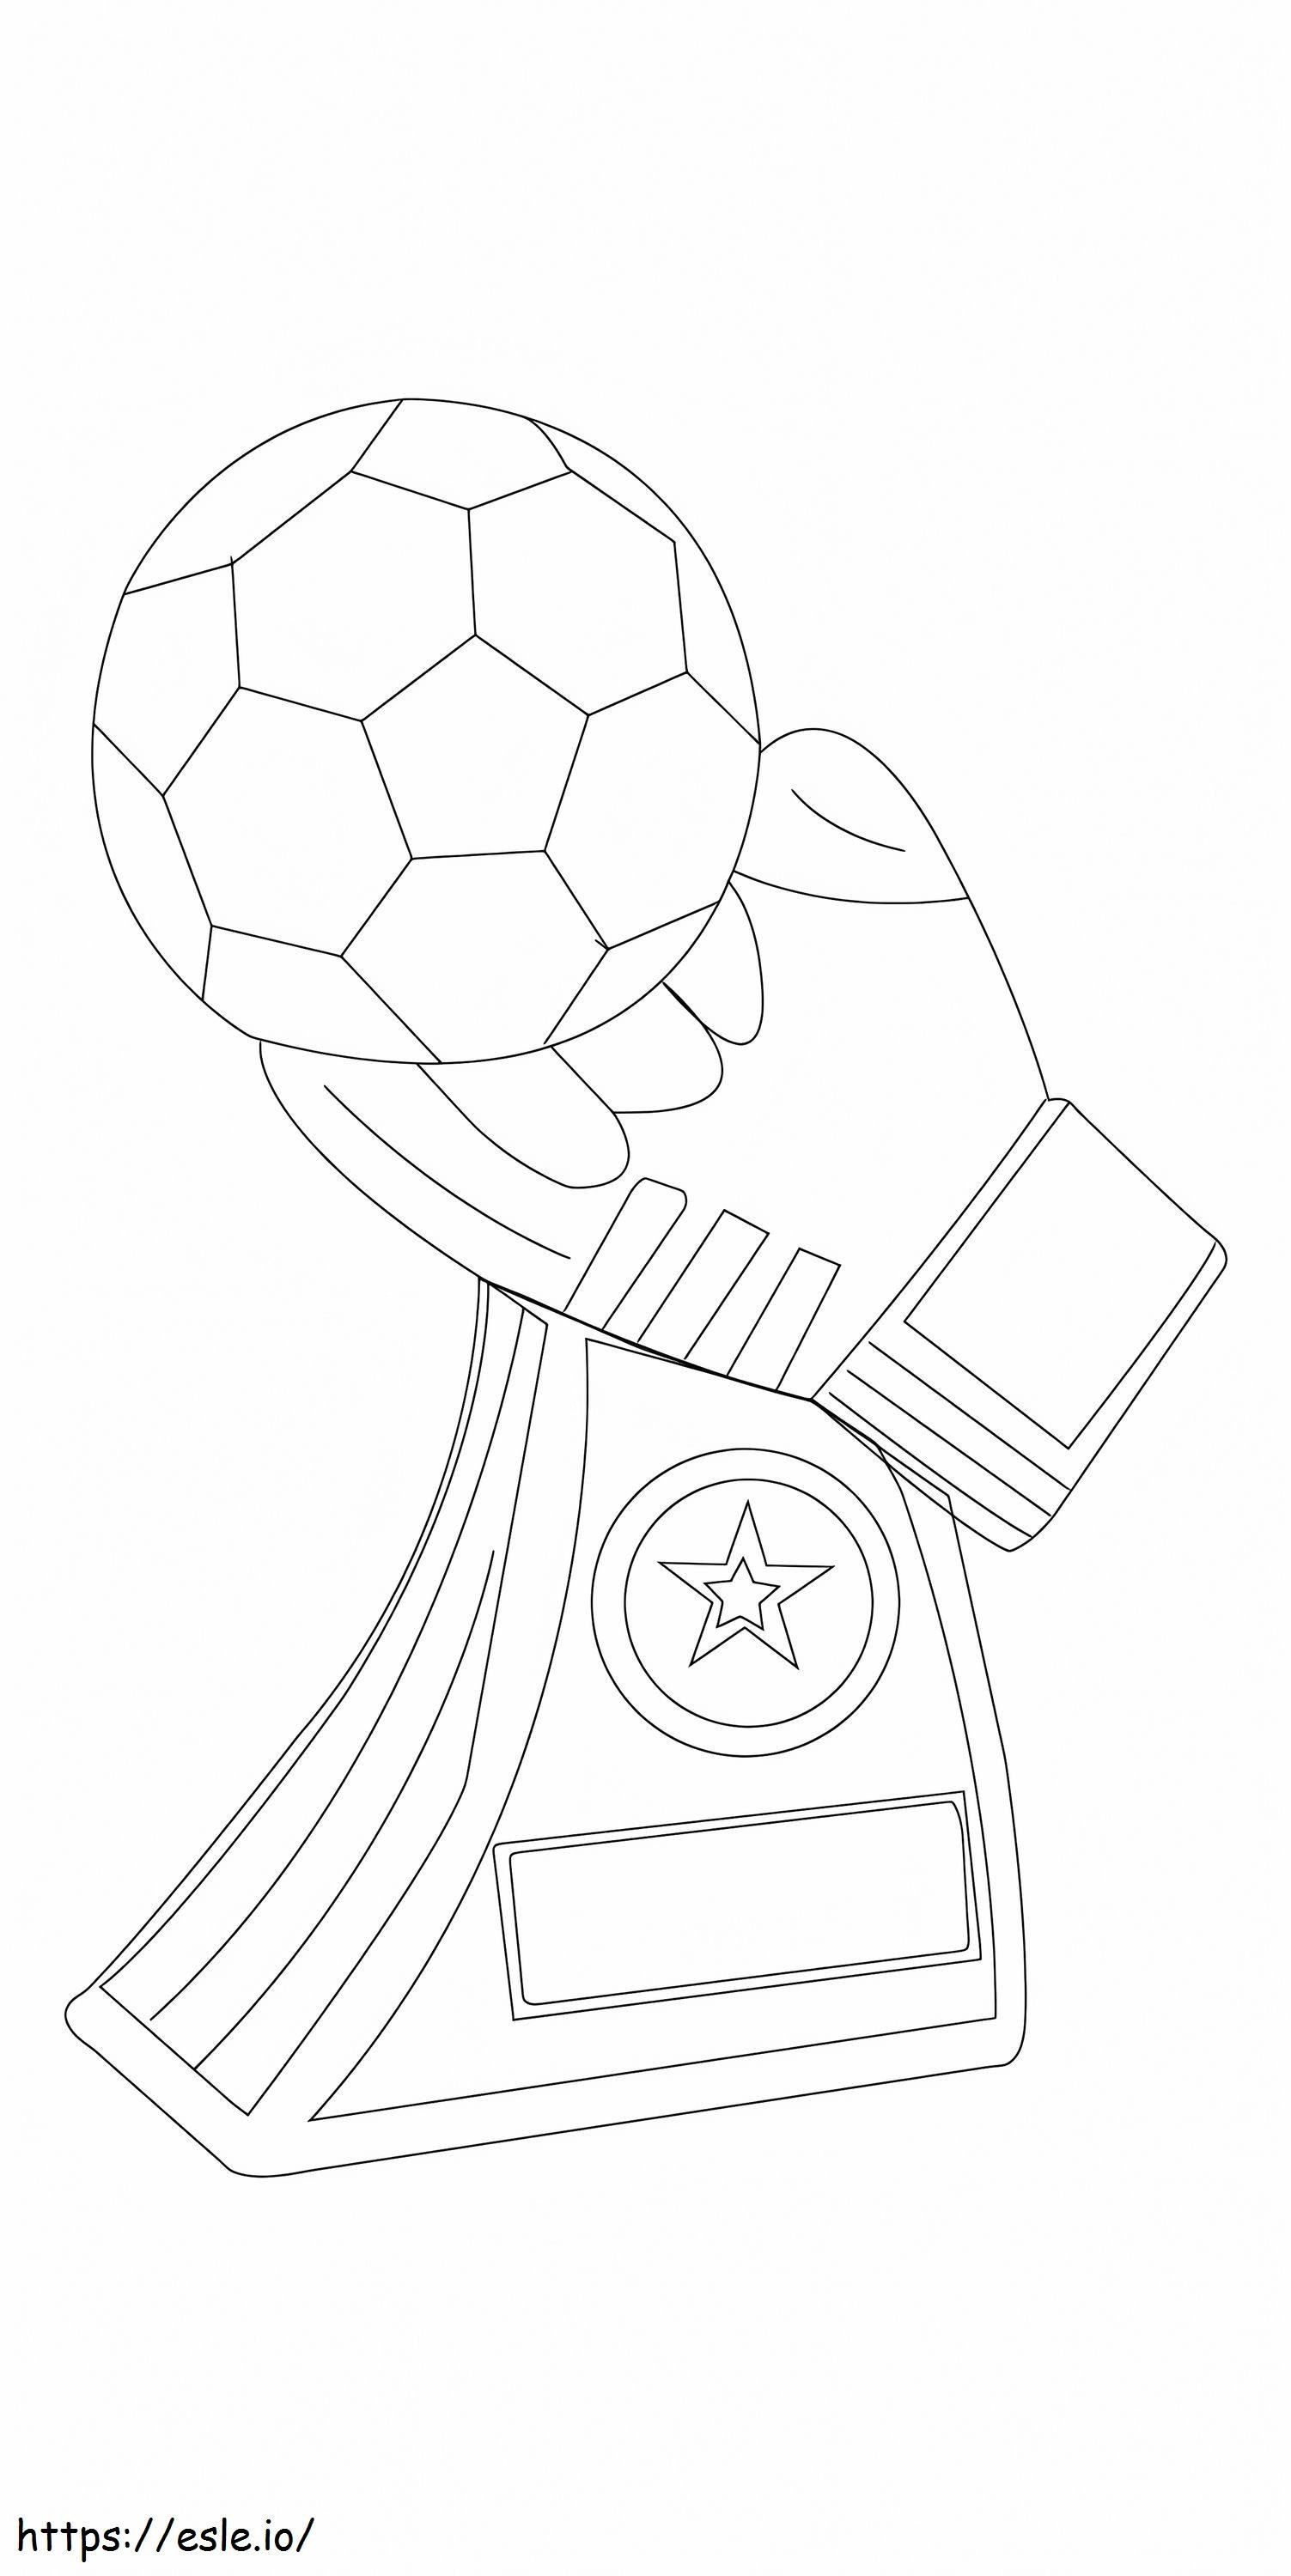 Troféu Ouro de Futebol para colorir